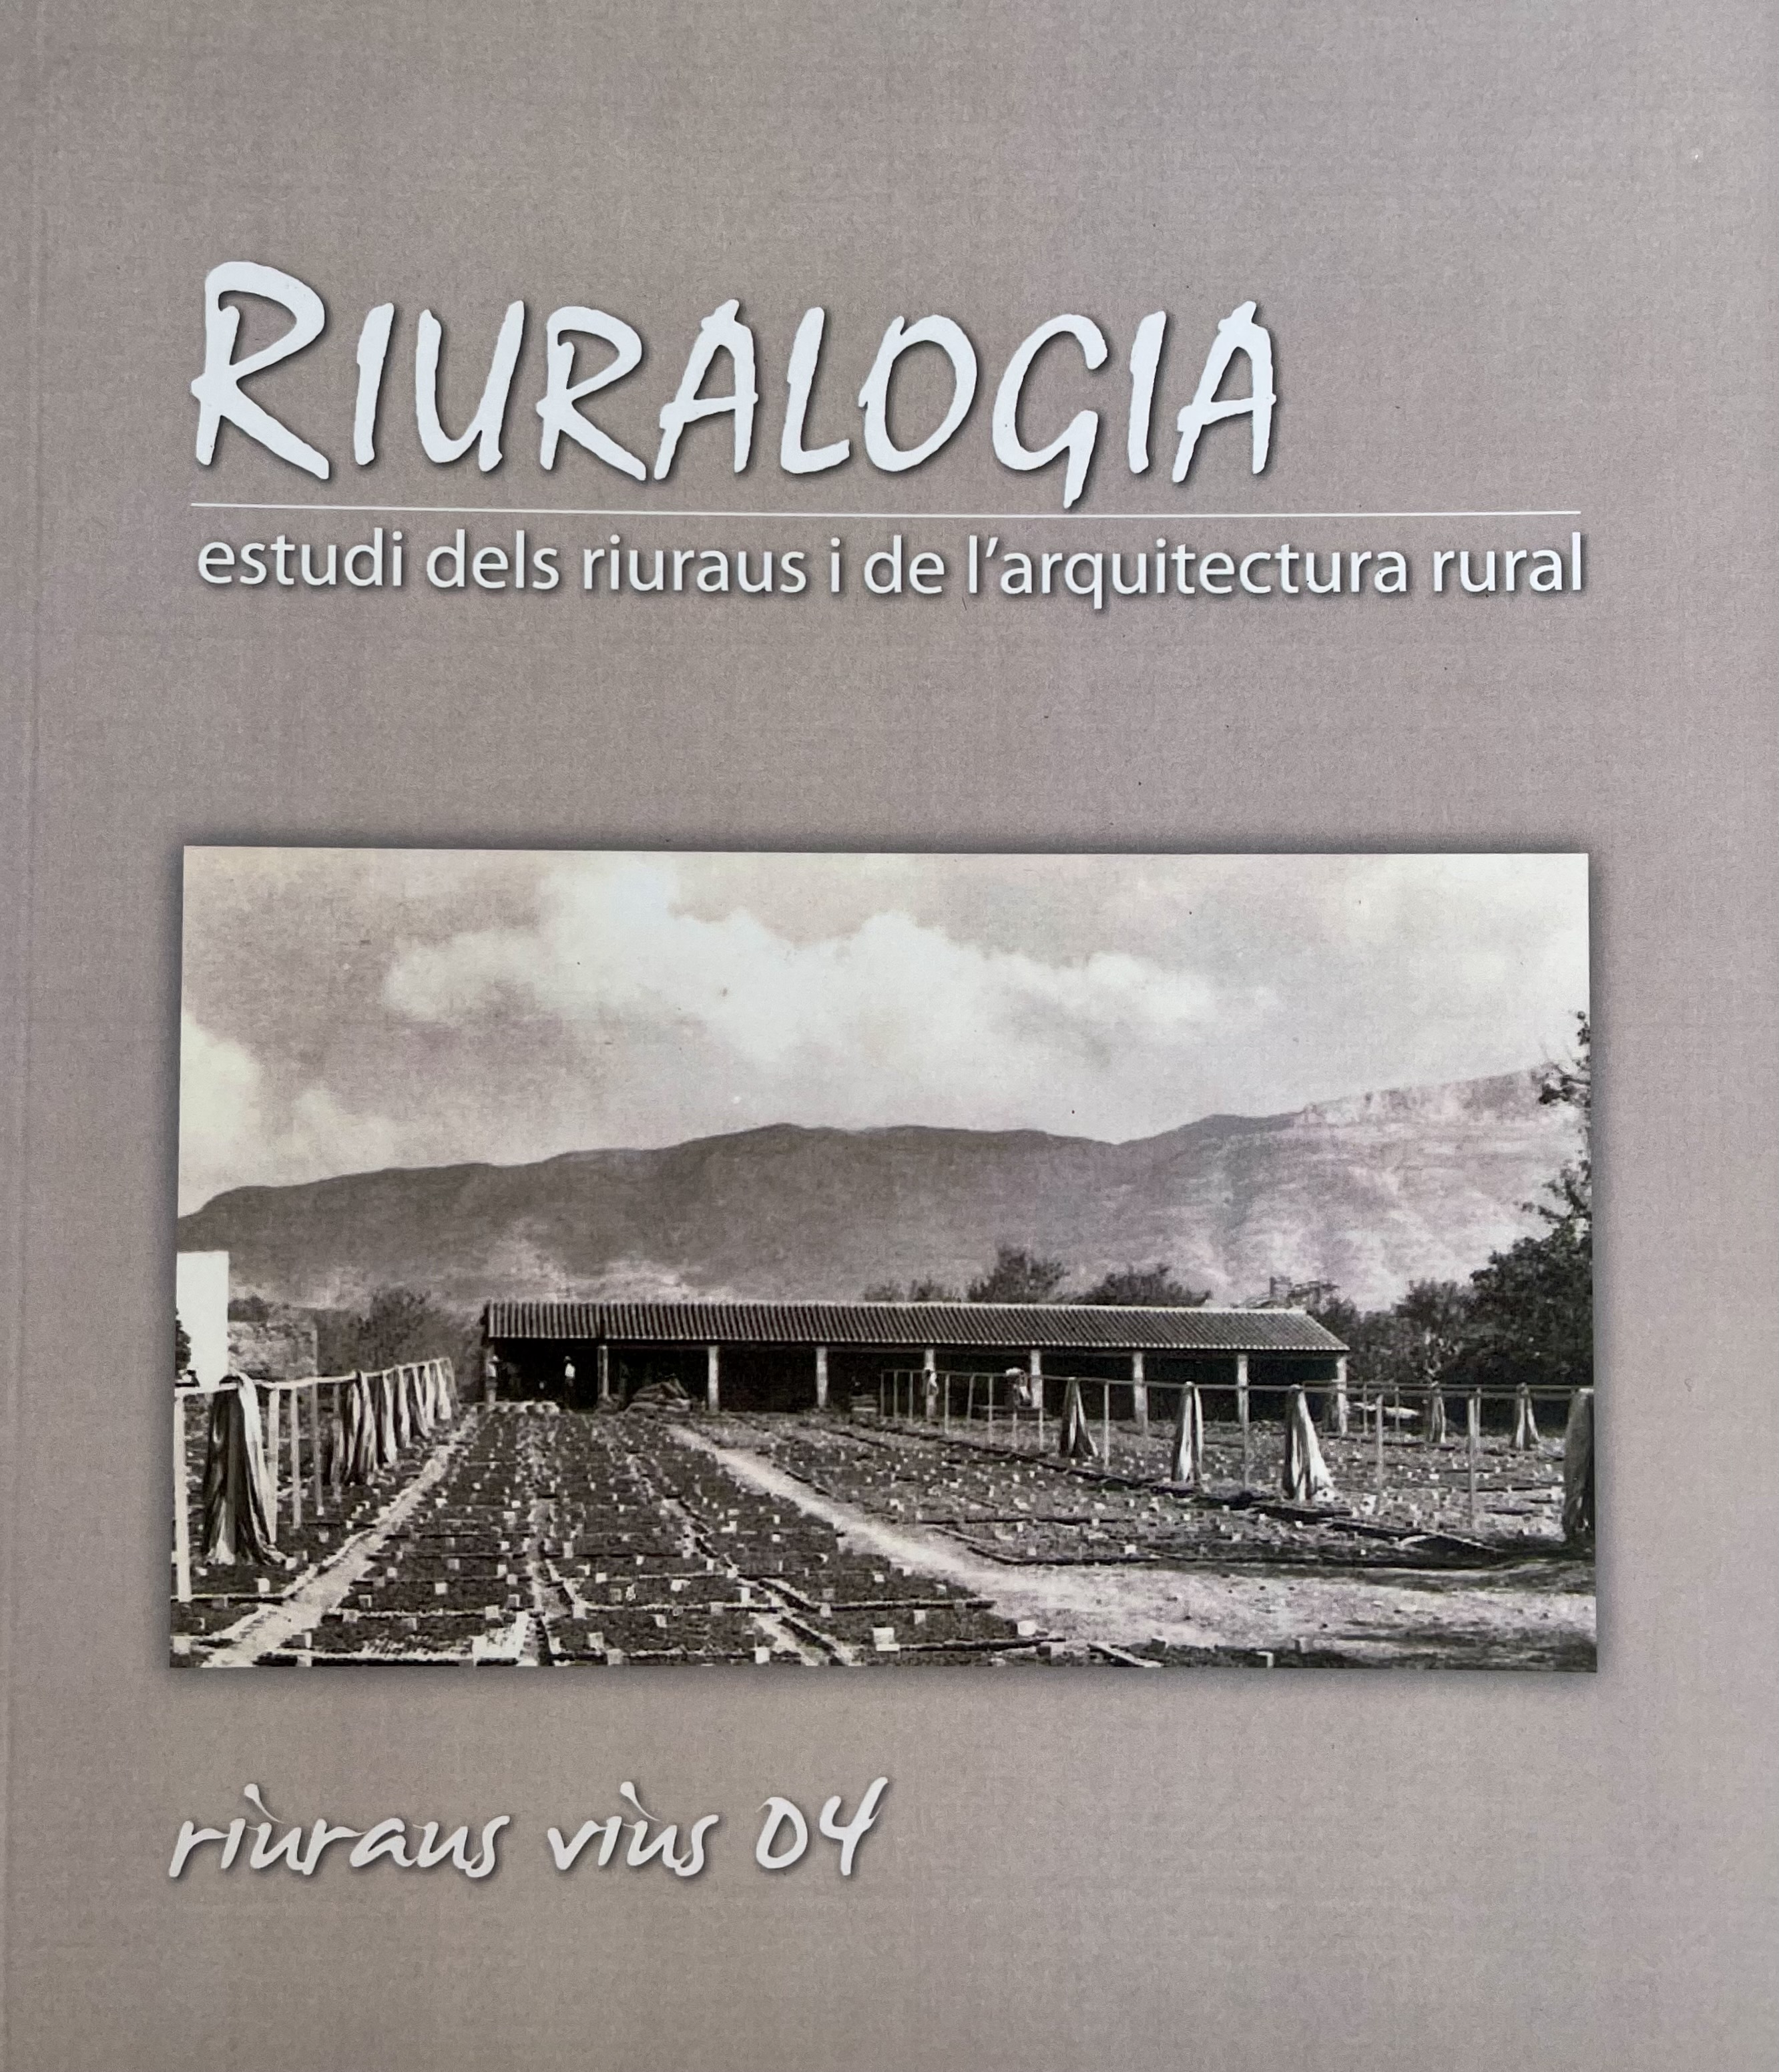 Riuralogia. Estudi dels riuraus i de l'arquitectura rural nº4